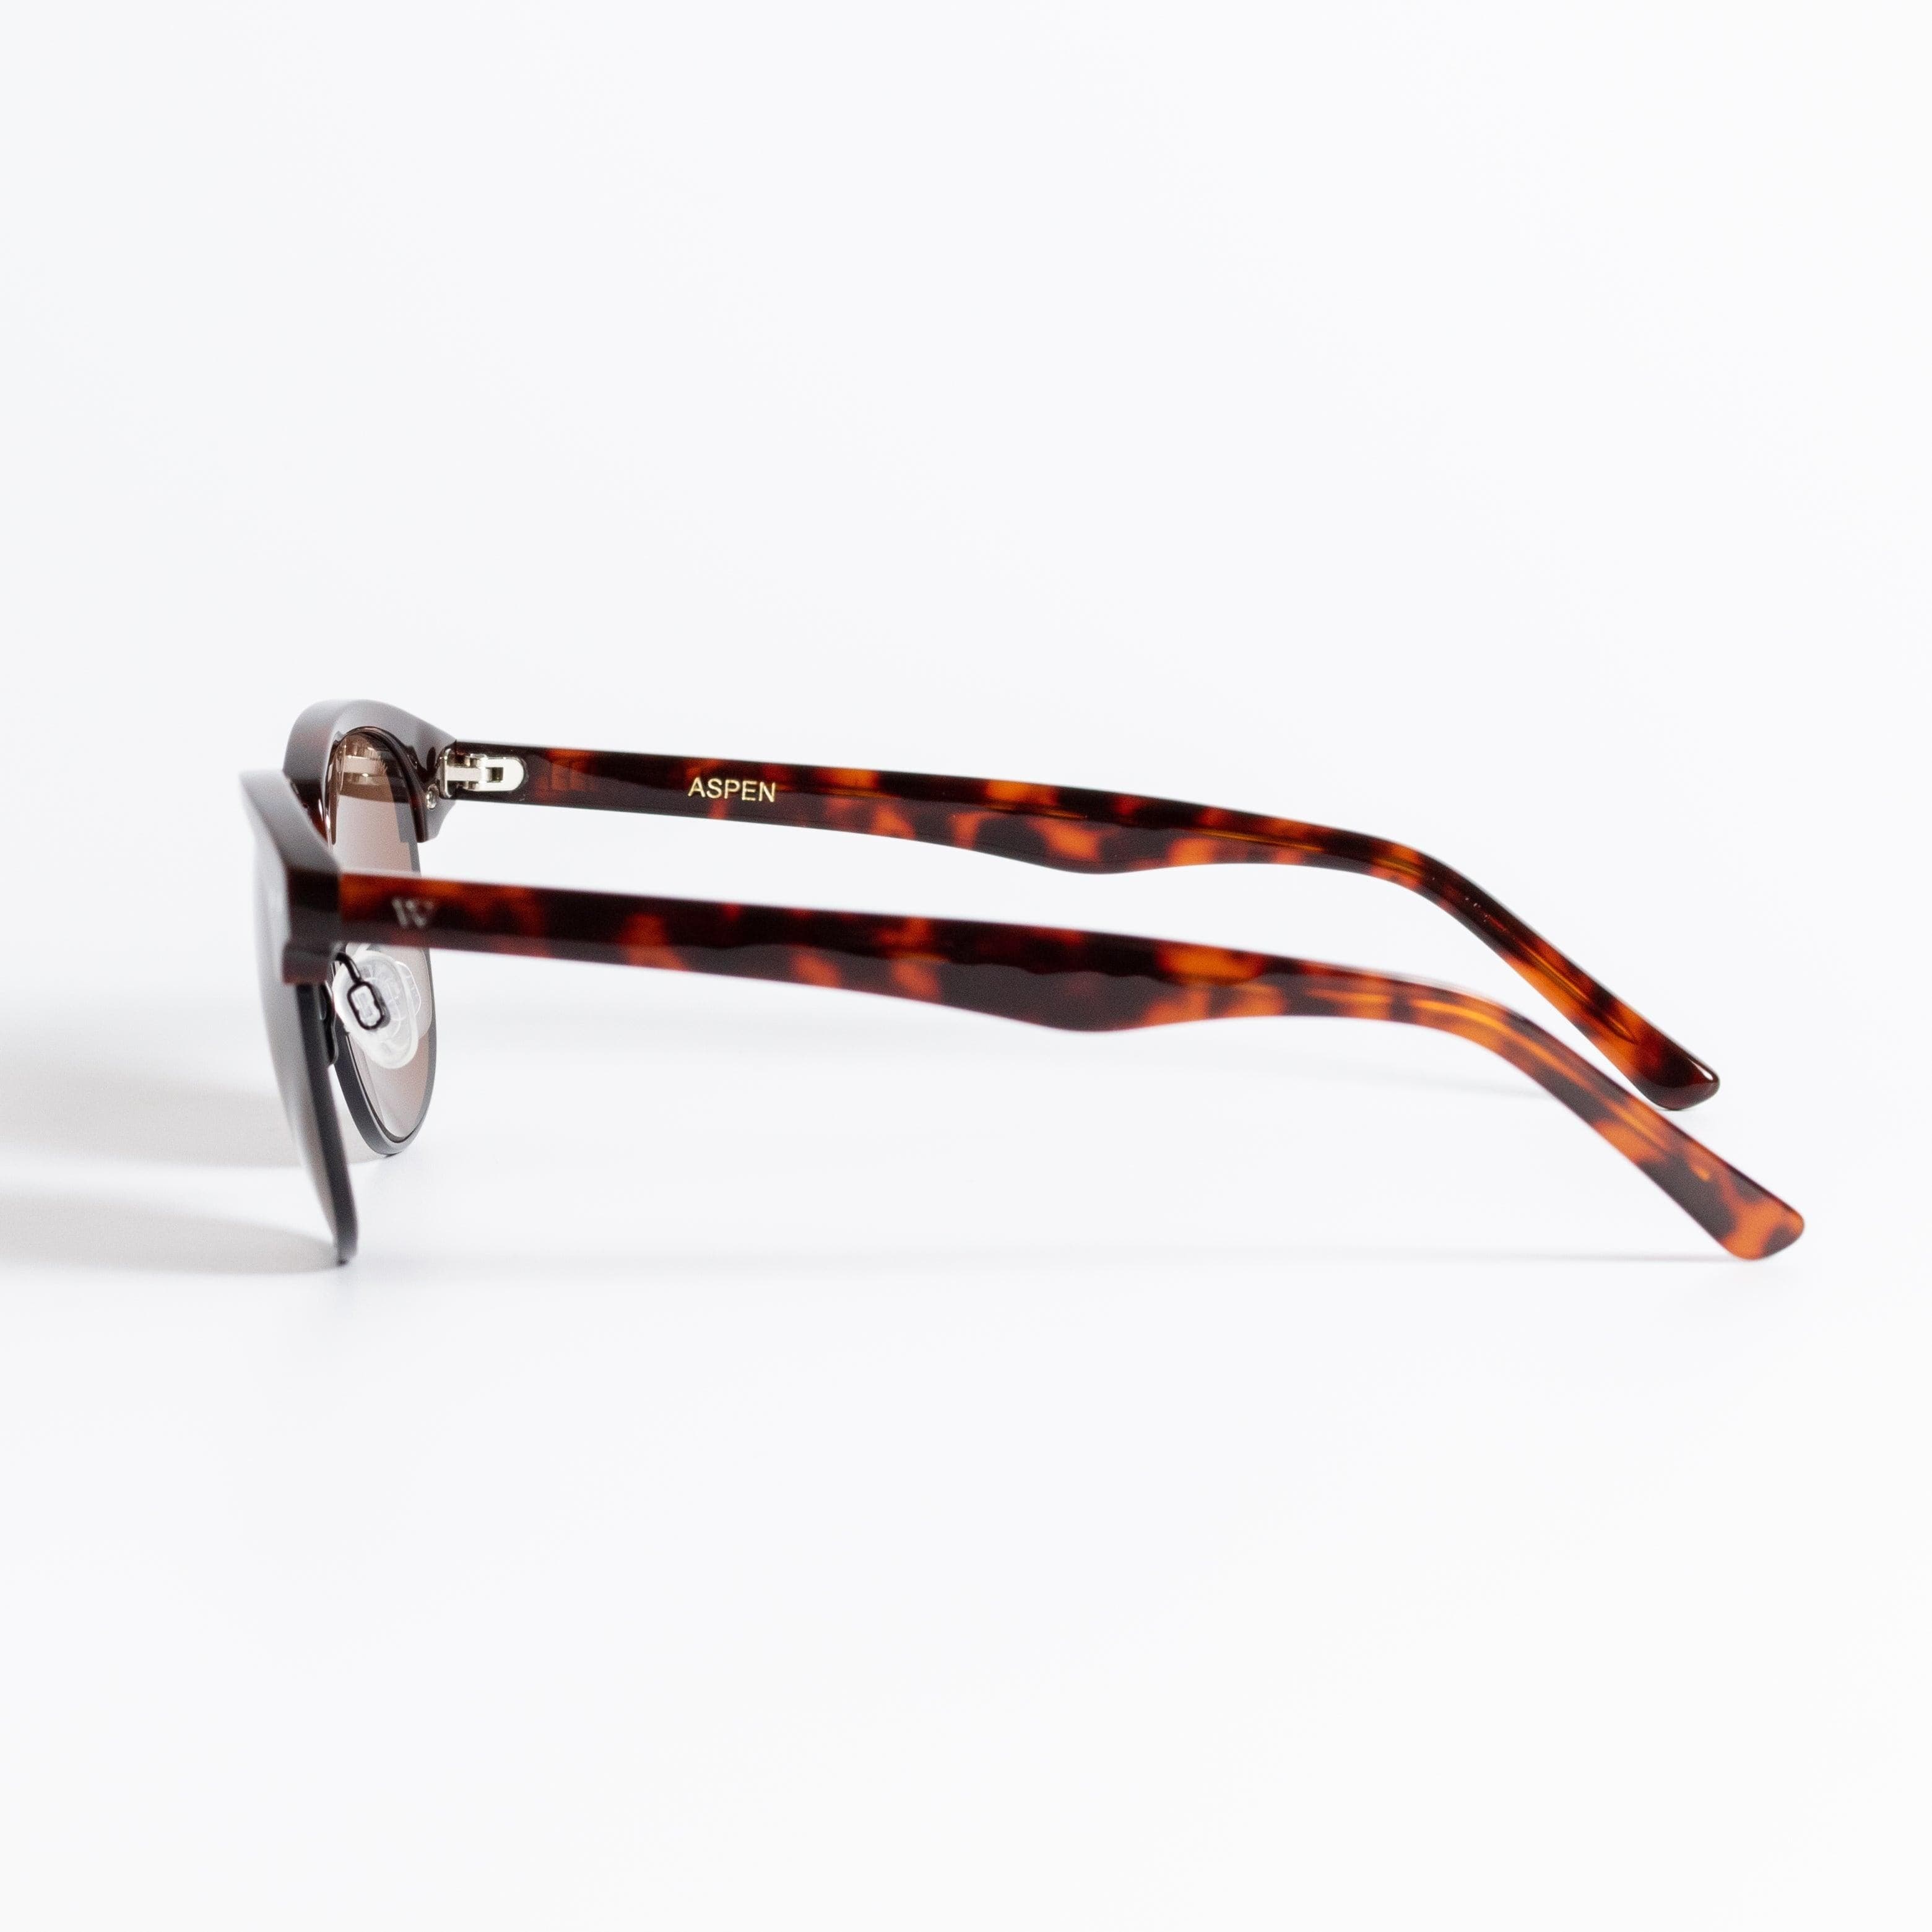 Walter Hill Sunglasses Tortoise / Standard / Polarized Cat.3 ASPEN - Tortoise